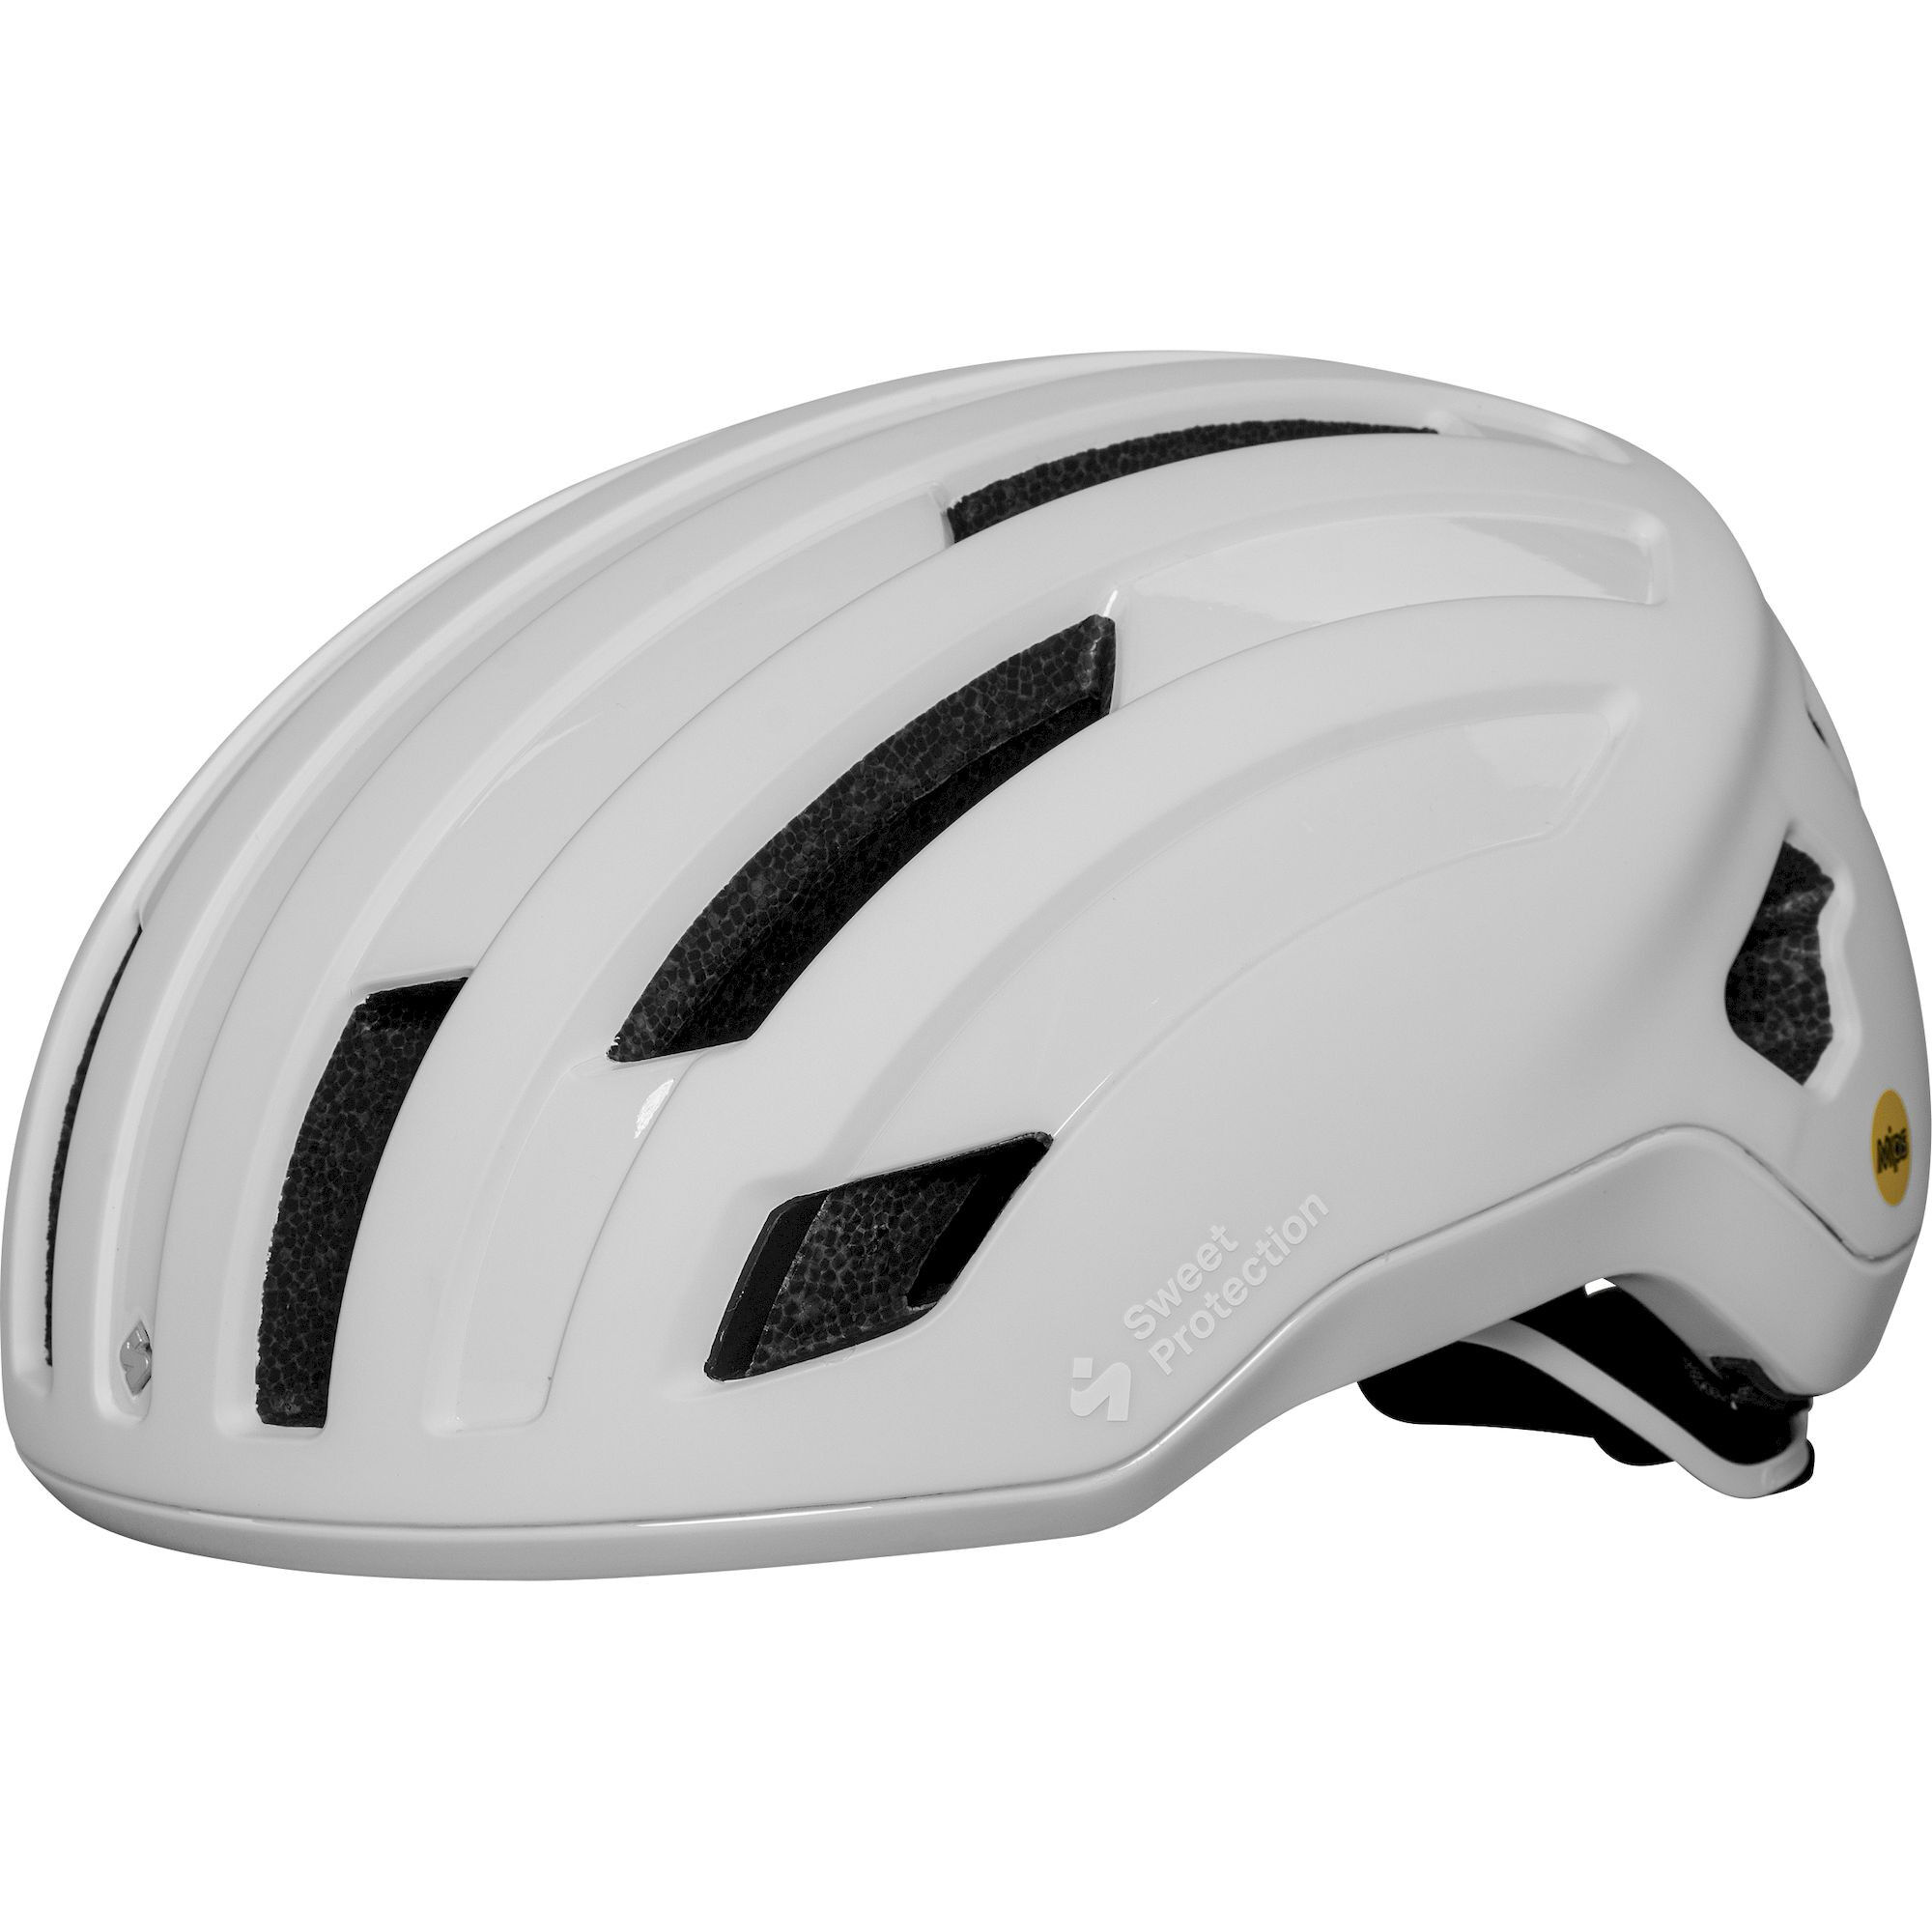 Sweet Protection Outrider MIPS Helmet - Road bike helmet